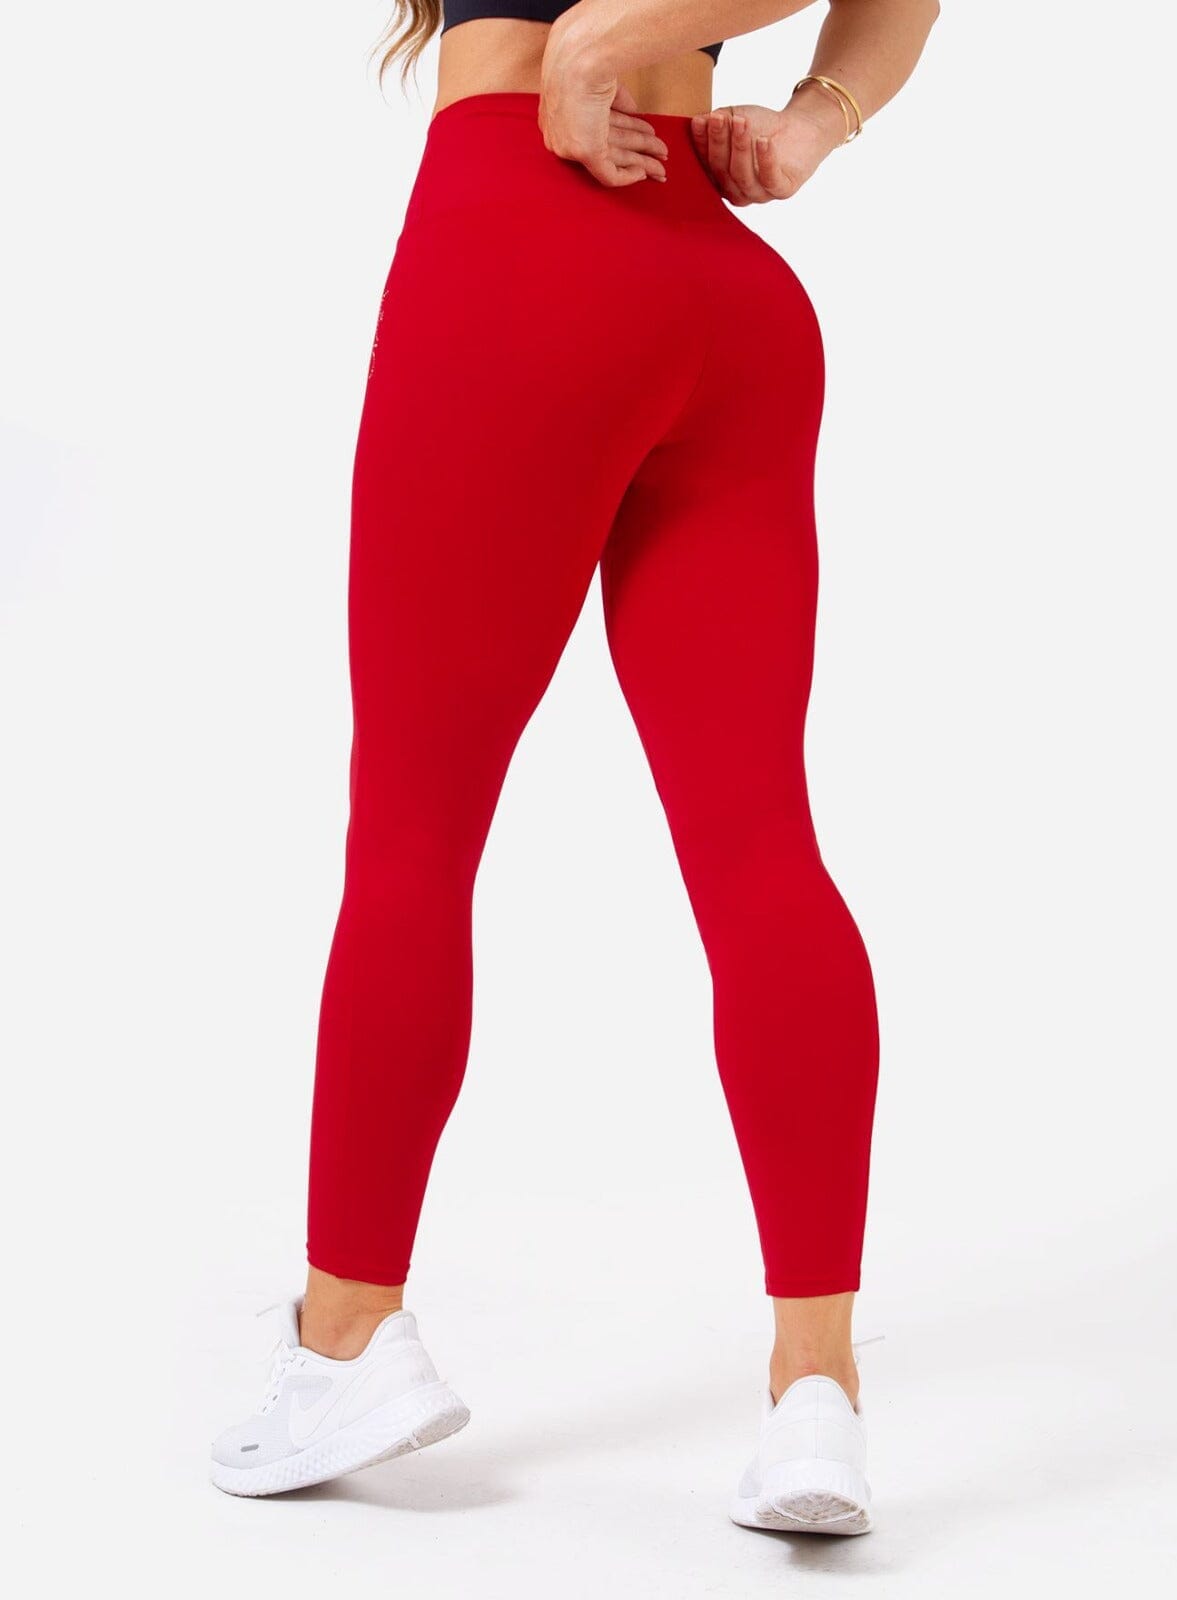 Legging Smart Emana - Red Leggings WinFitnesswear  #red